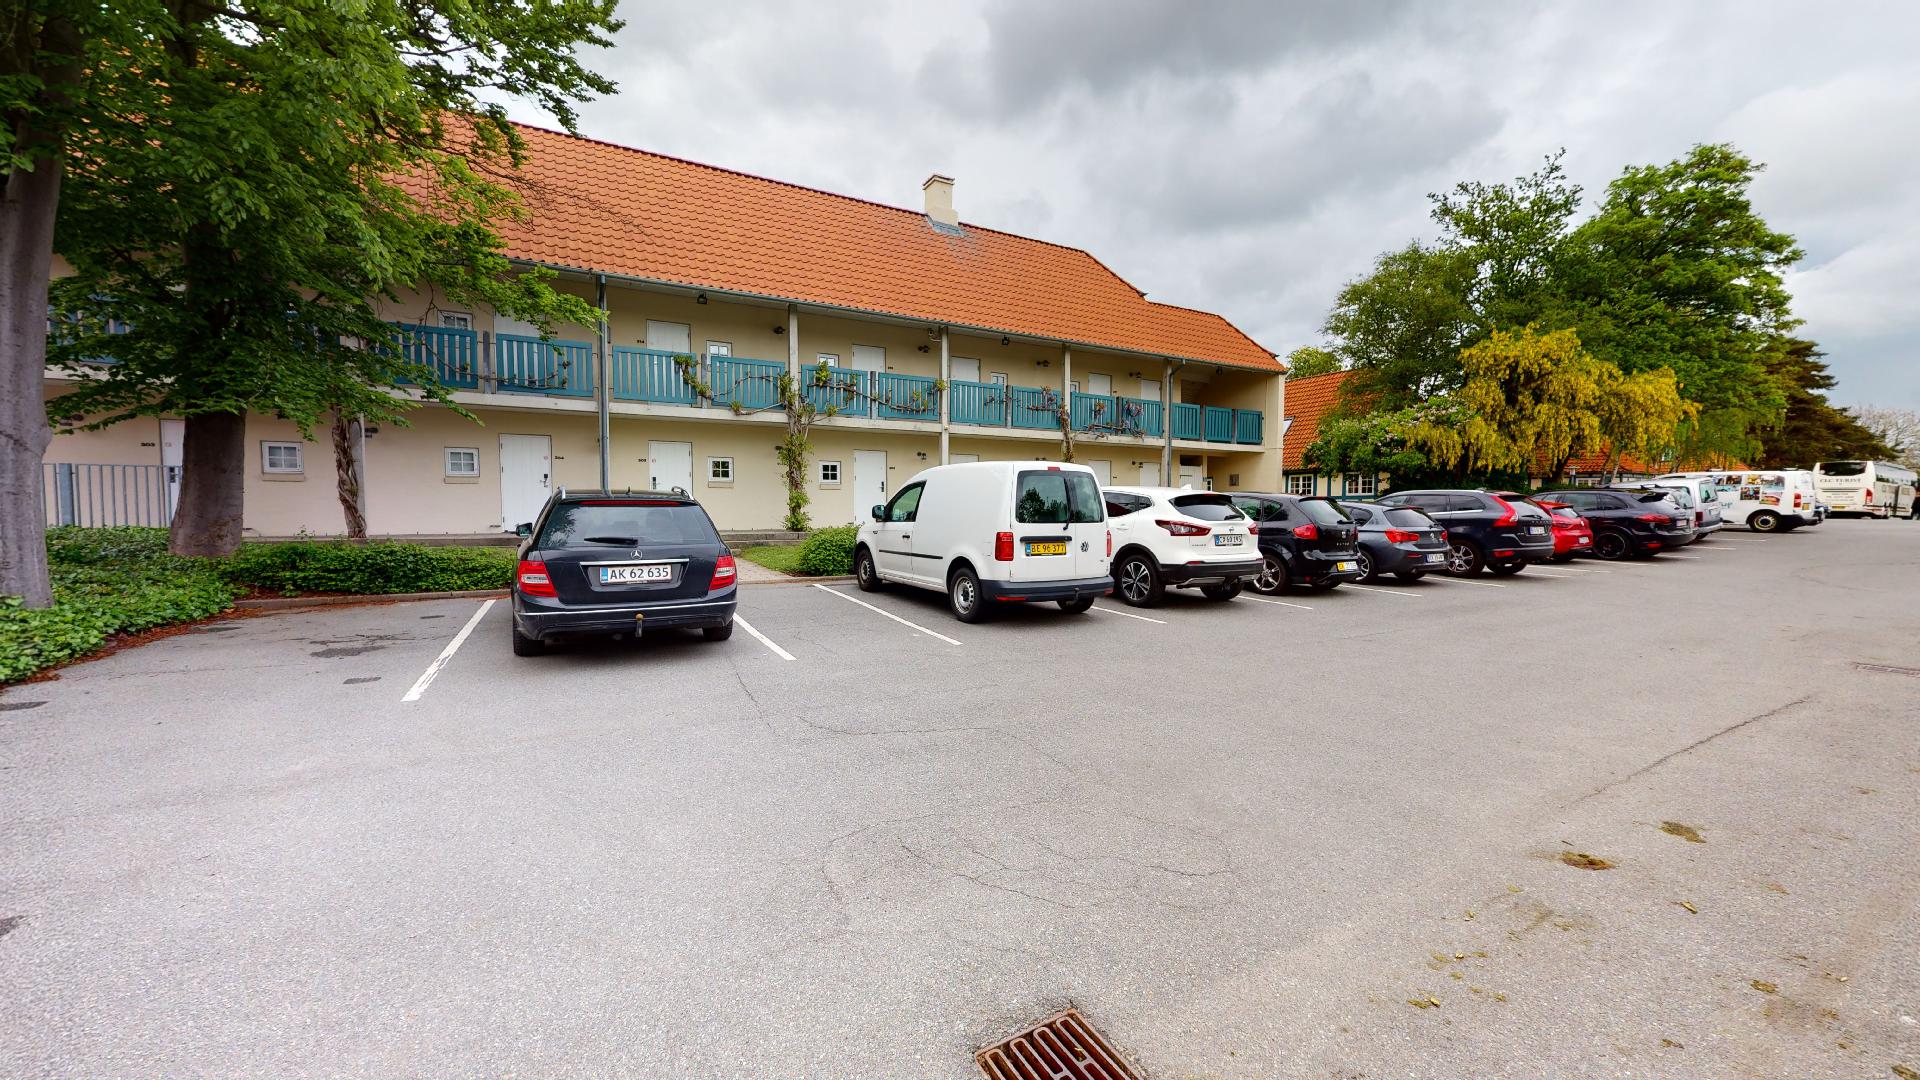 Konferencecenter I Hotel I Selskabslokale I Mødelokaler I Odense I Stemning I 3D-foto.dk I Virtuel 3D-præsentation I Digital rundtur I Matterport